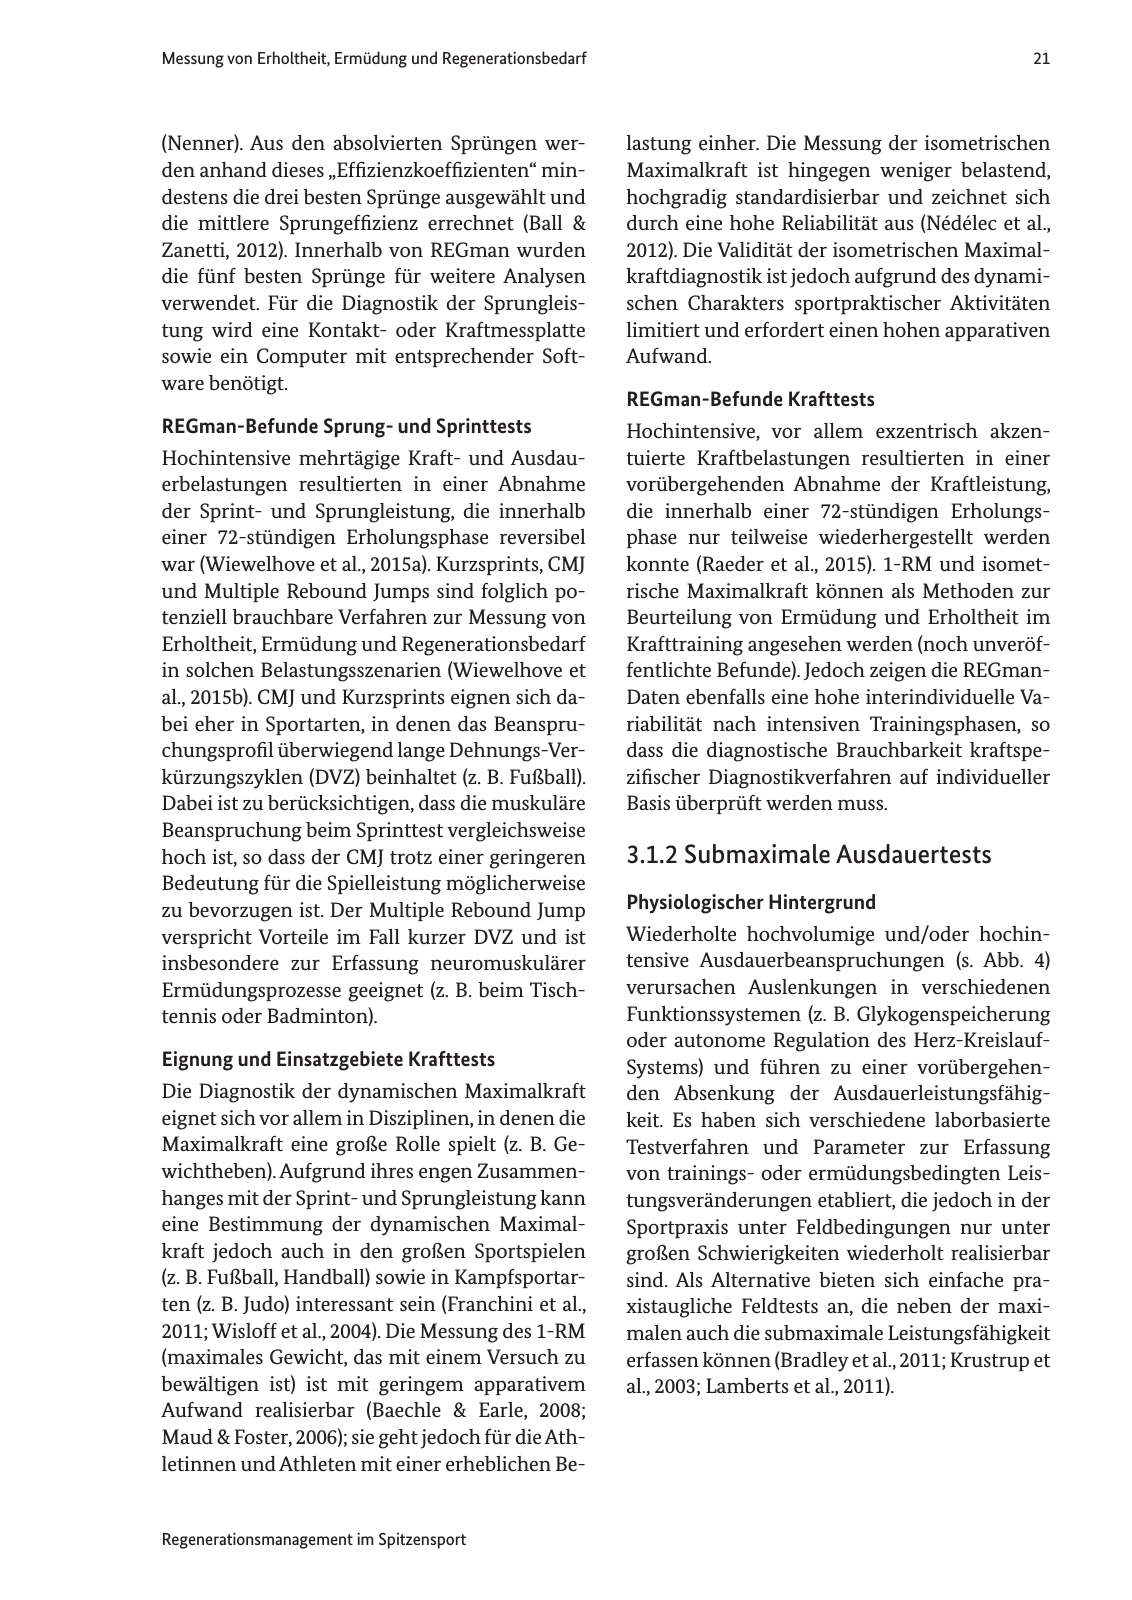 Vorschau Handreichung Regmann / Regenerationsmanagement im Spitzensport Seite 22